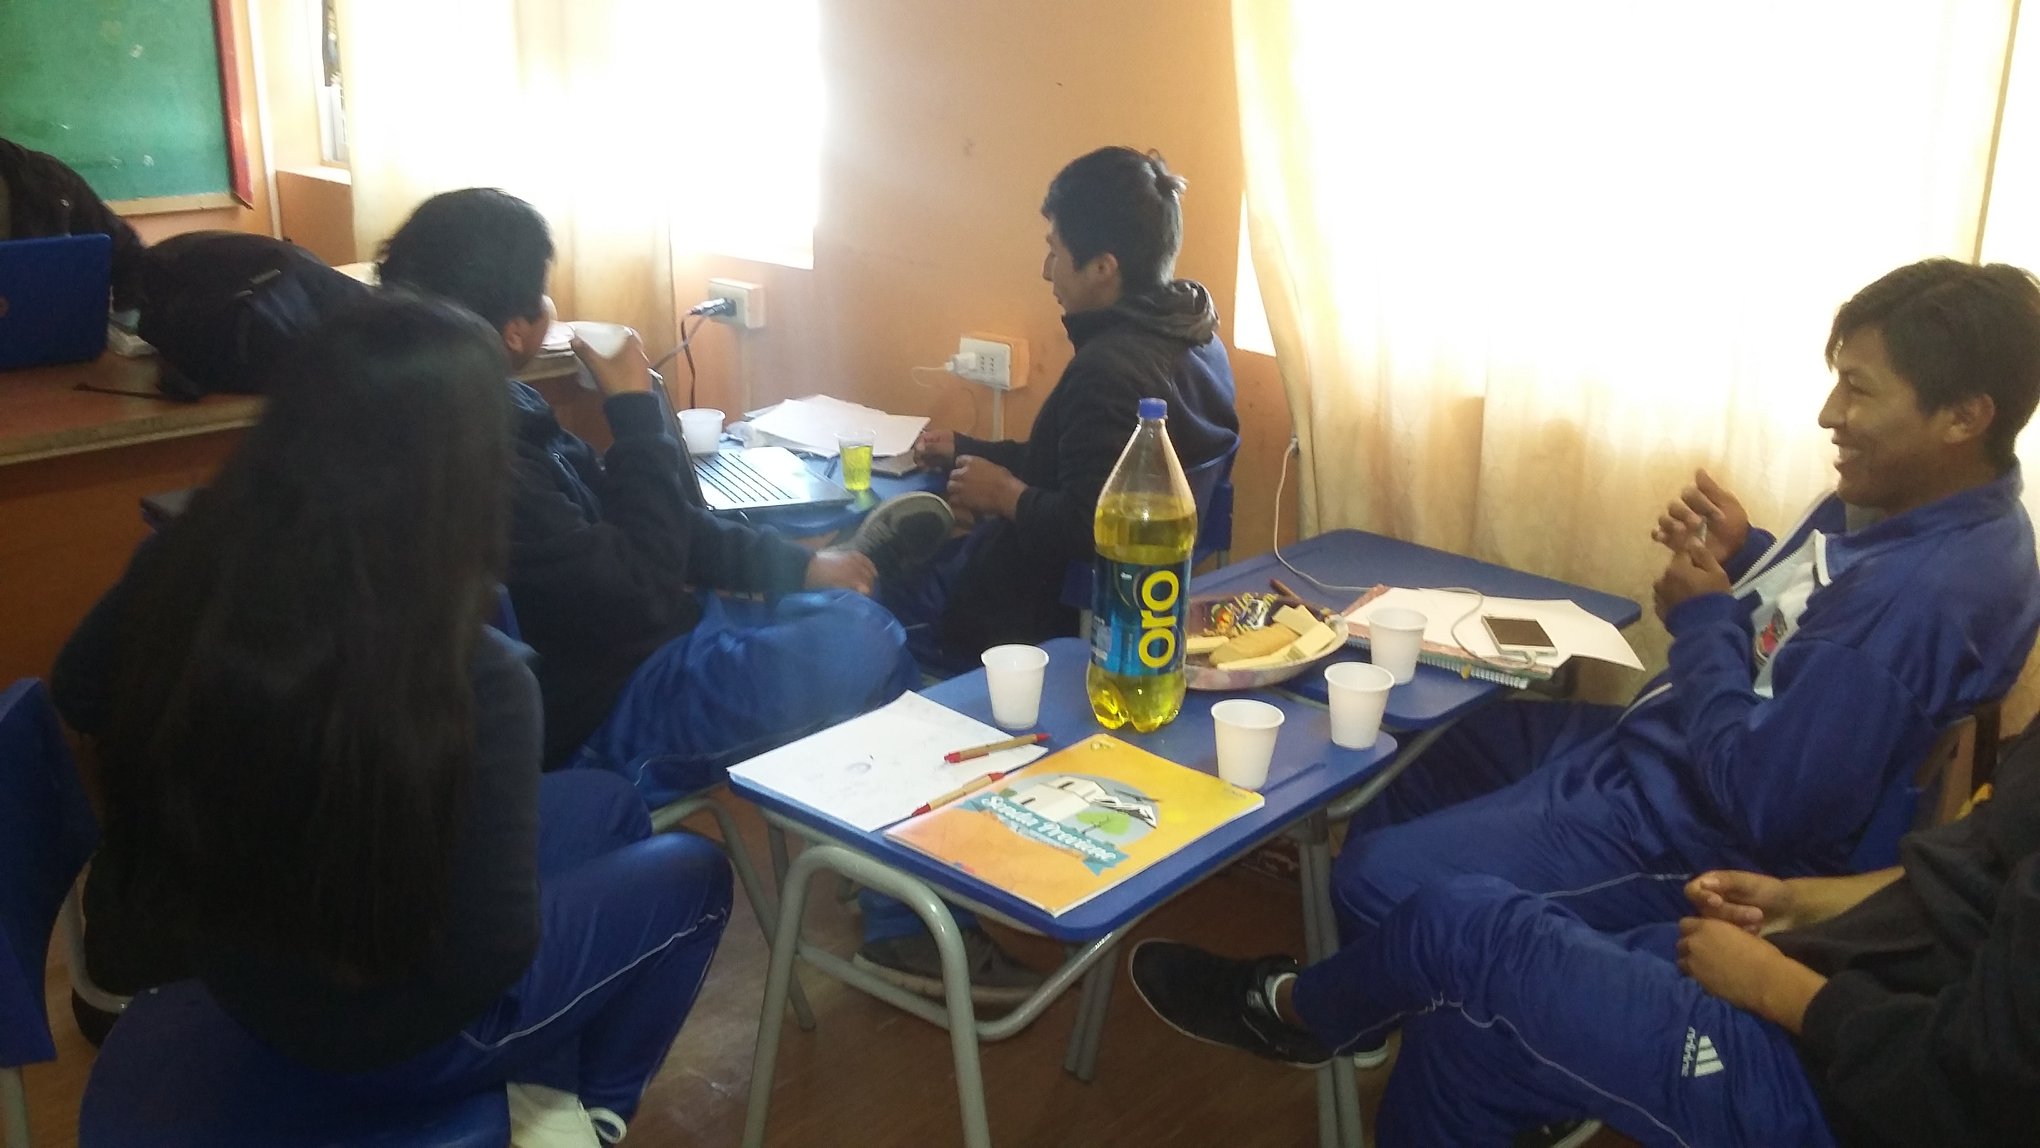 Municipio de Putre desarrolla campaña preventiva antidrogas en estudiantes de Liceo “Granaderos”